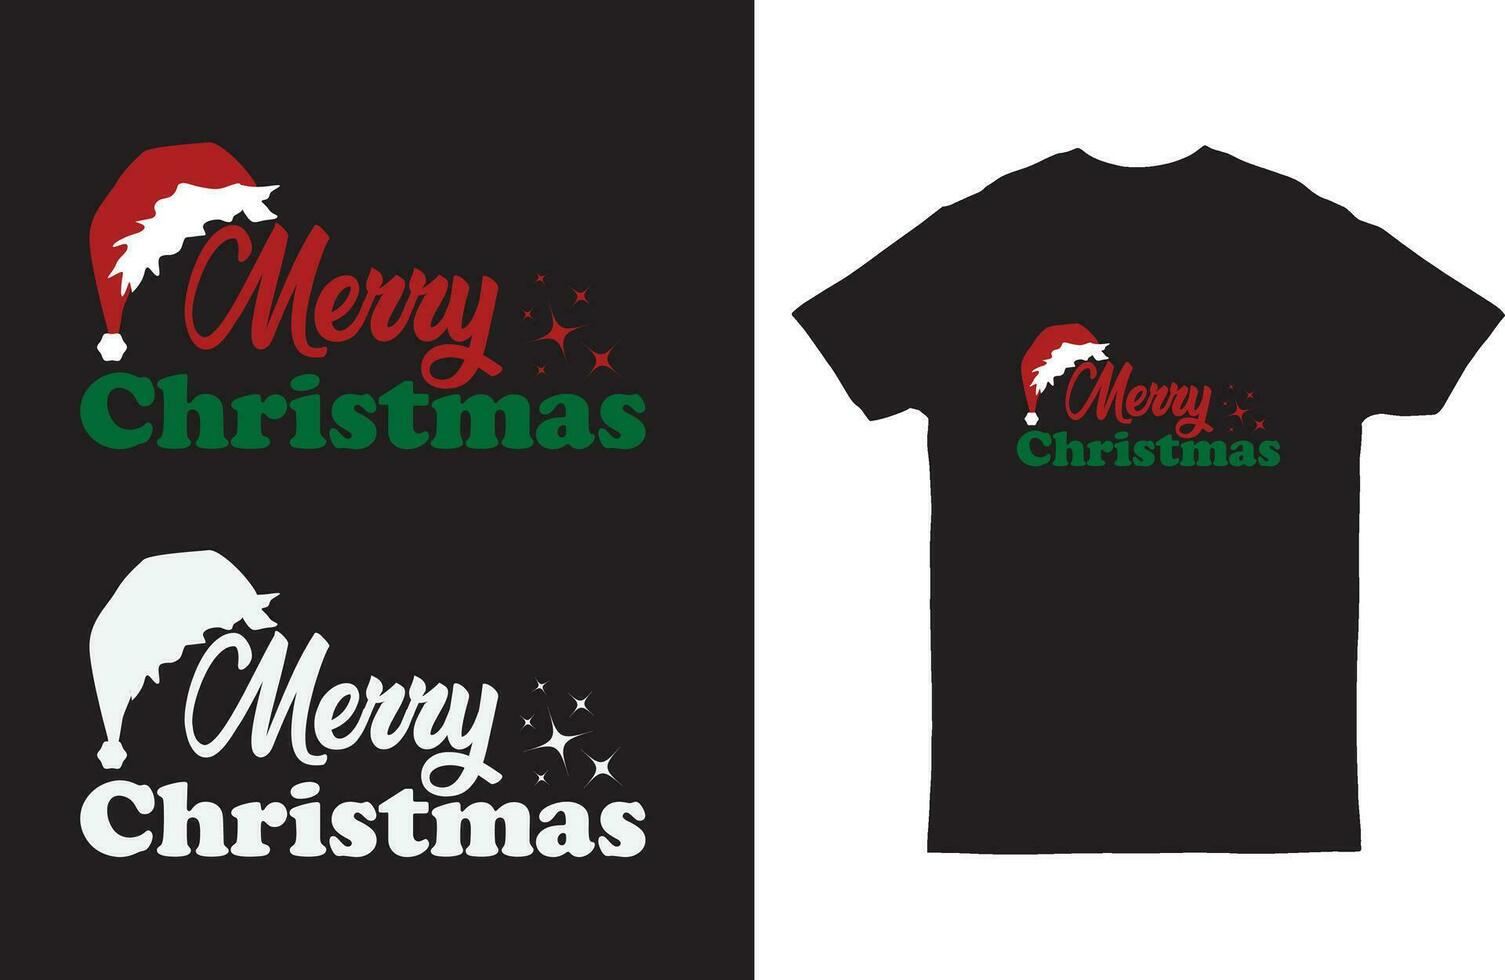 vrolijk Kerstmis tekst met de kerstman hoed t-shirt ontwerp vector